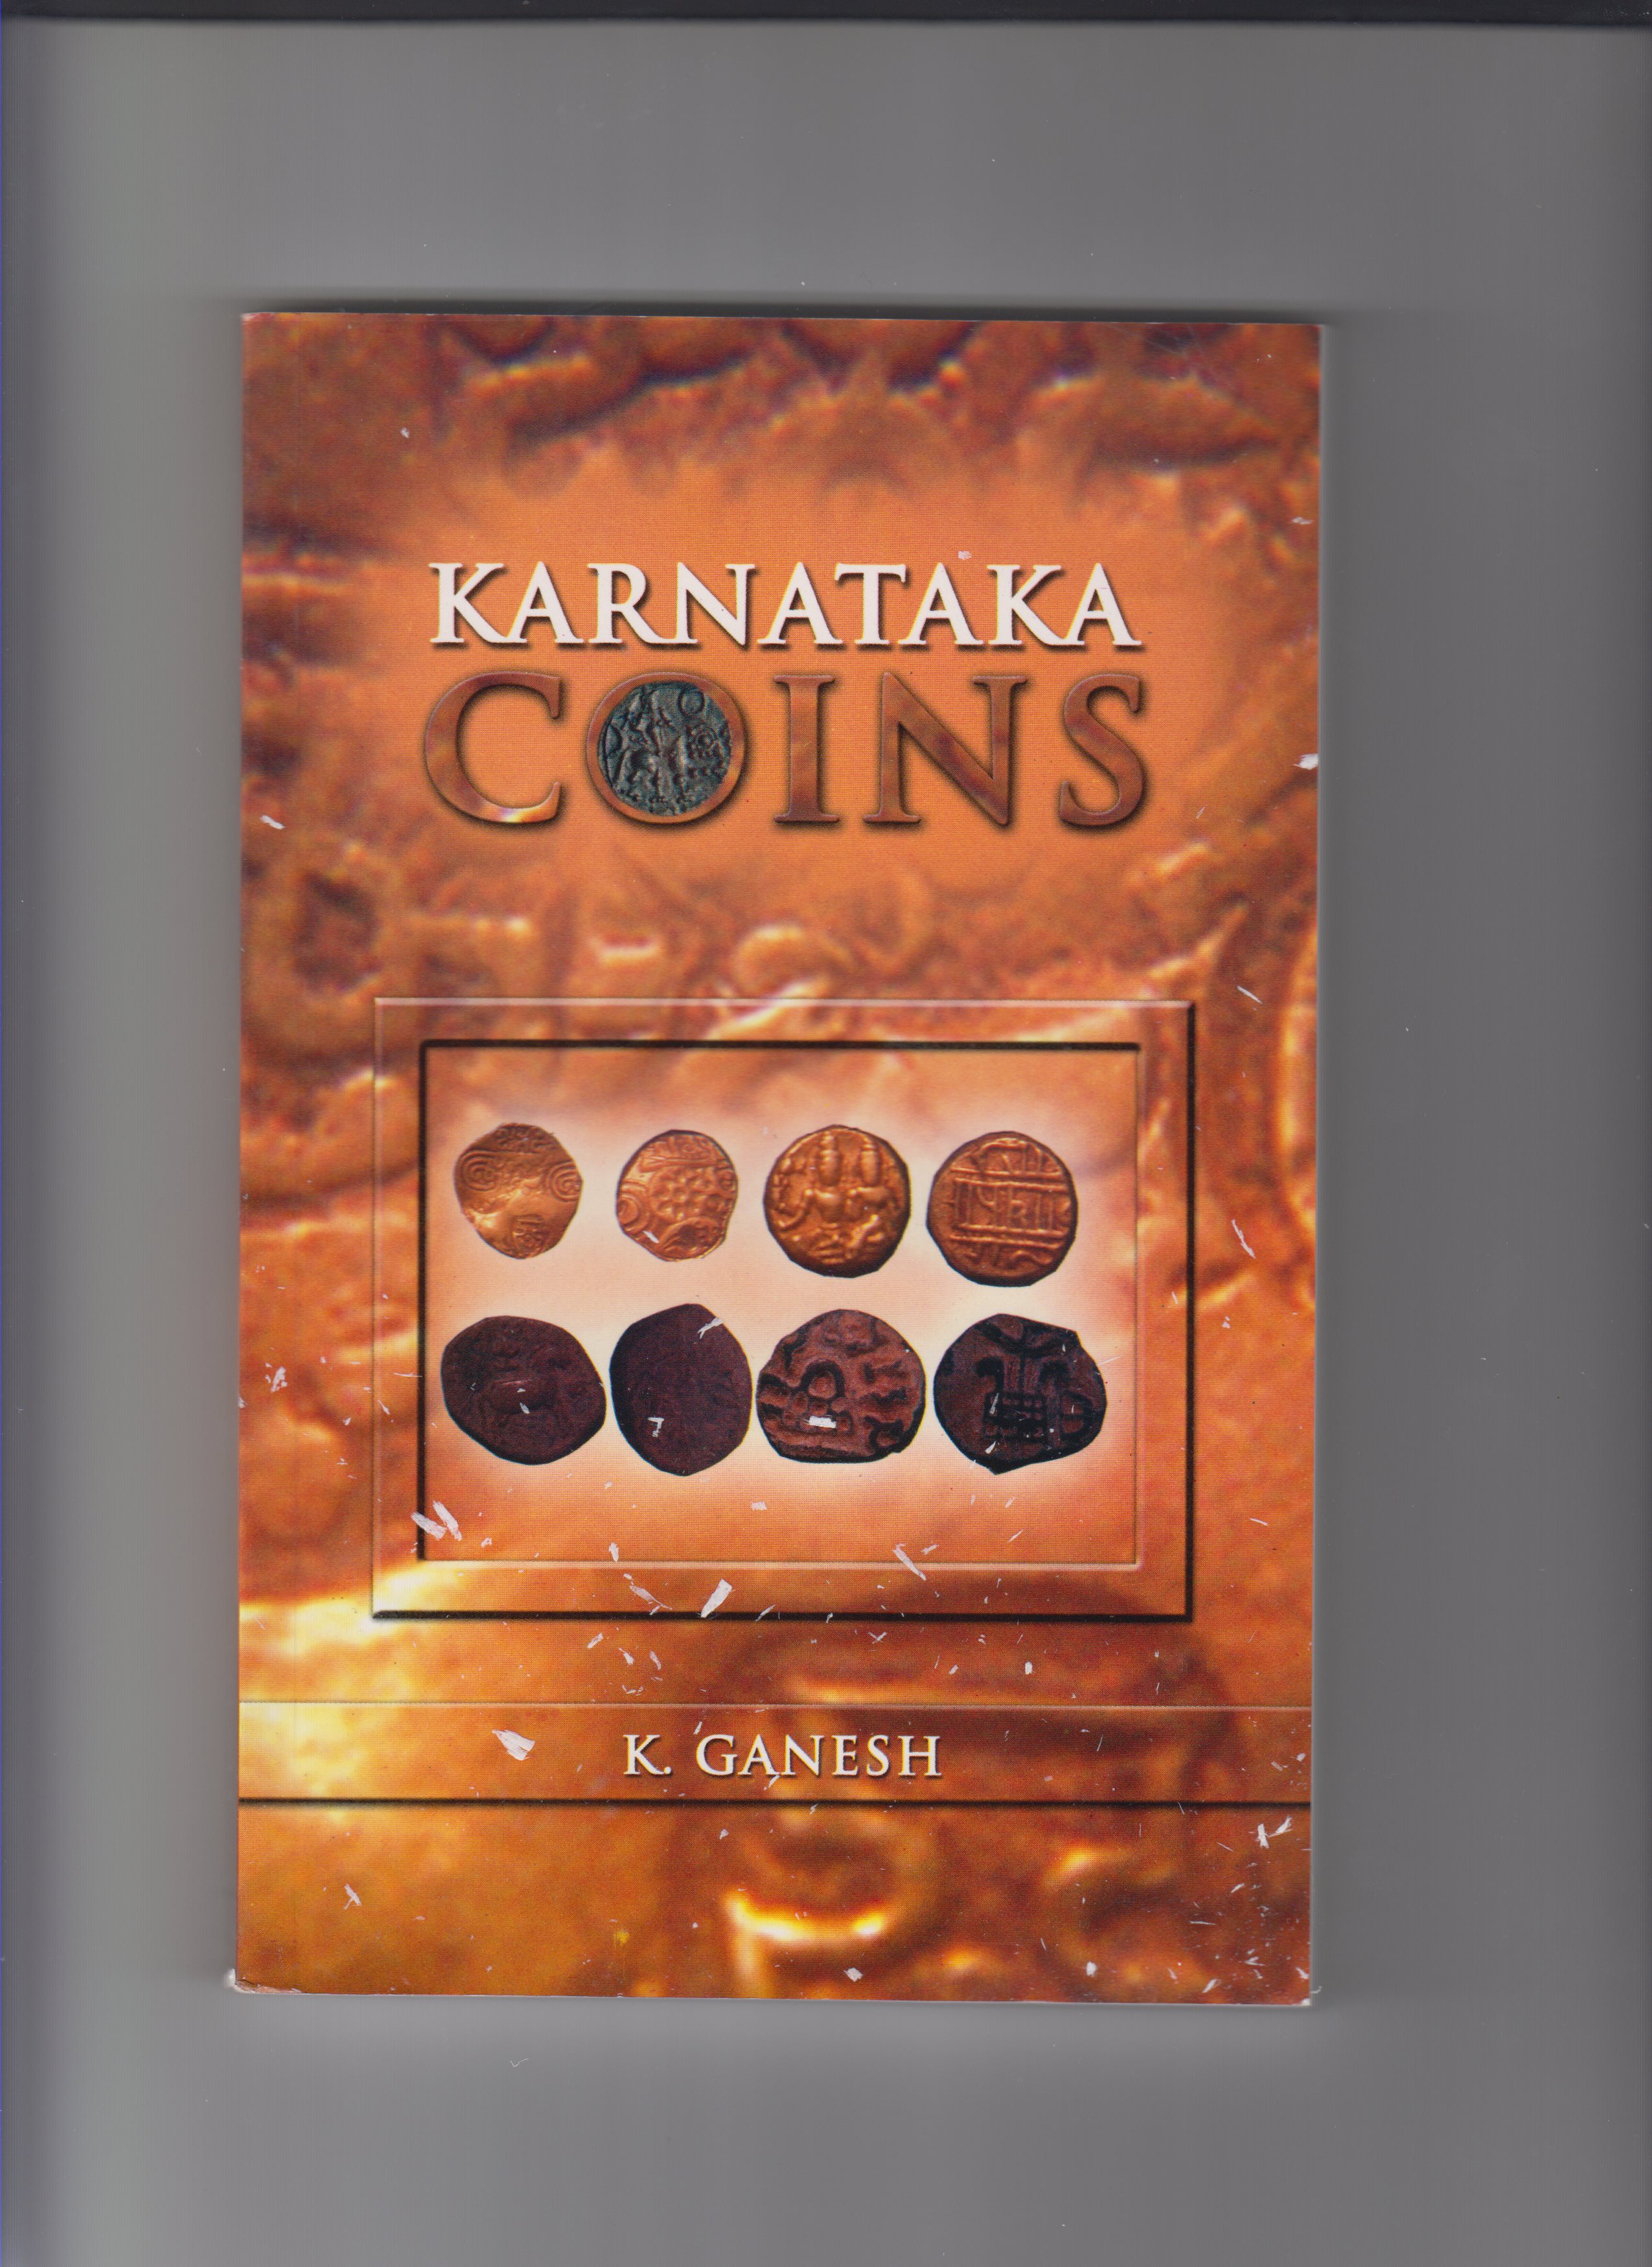 Karnataka coins